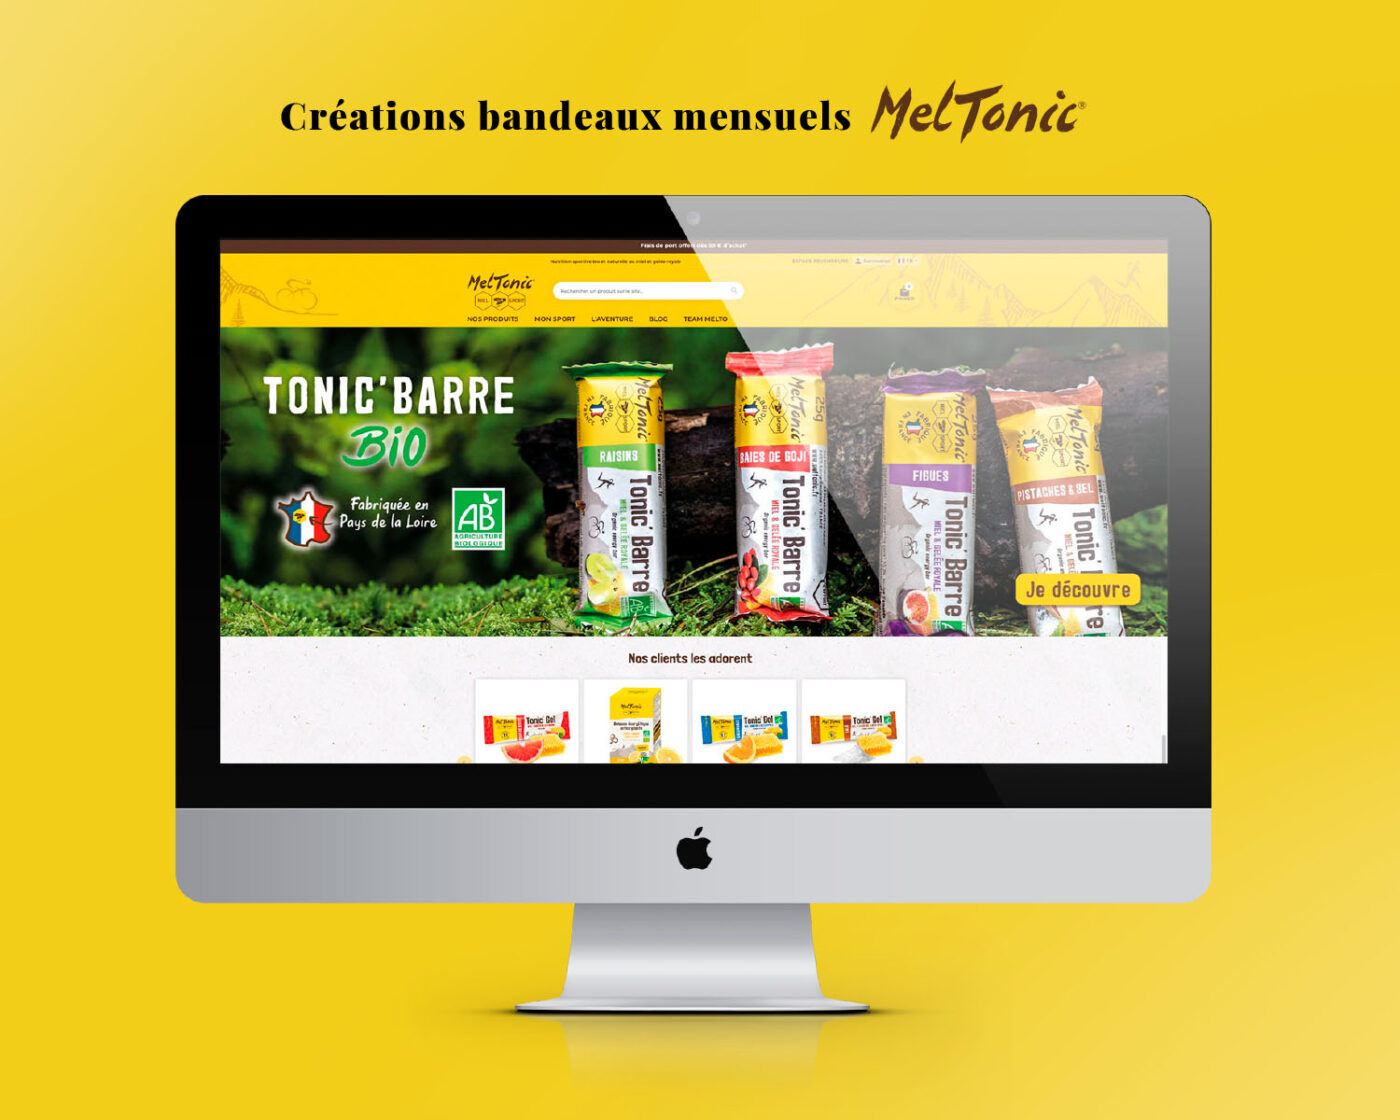 Création de bandeaux mensuels pour le site de la marque Meltonic